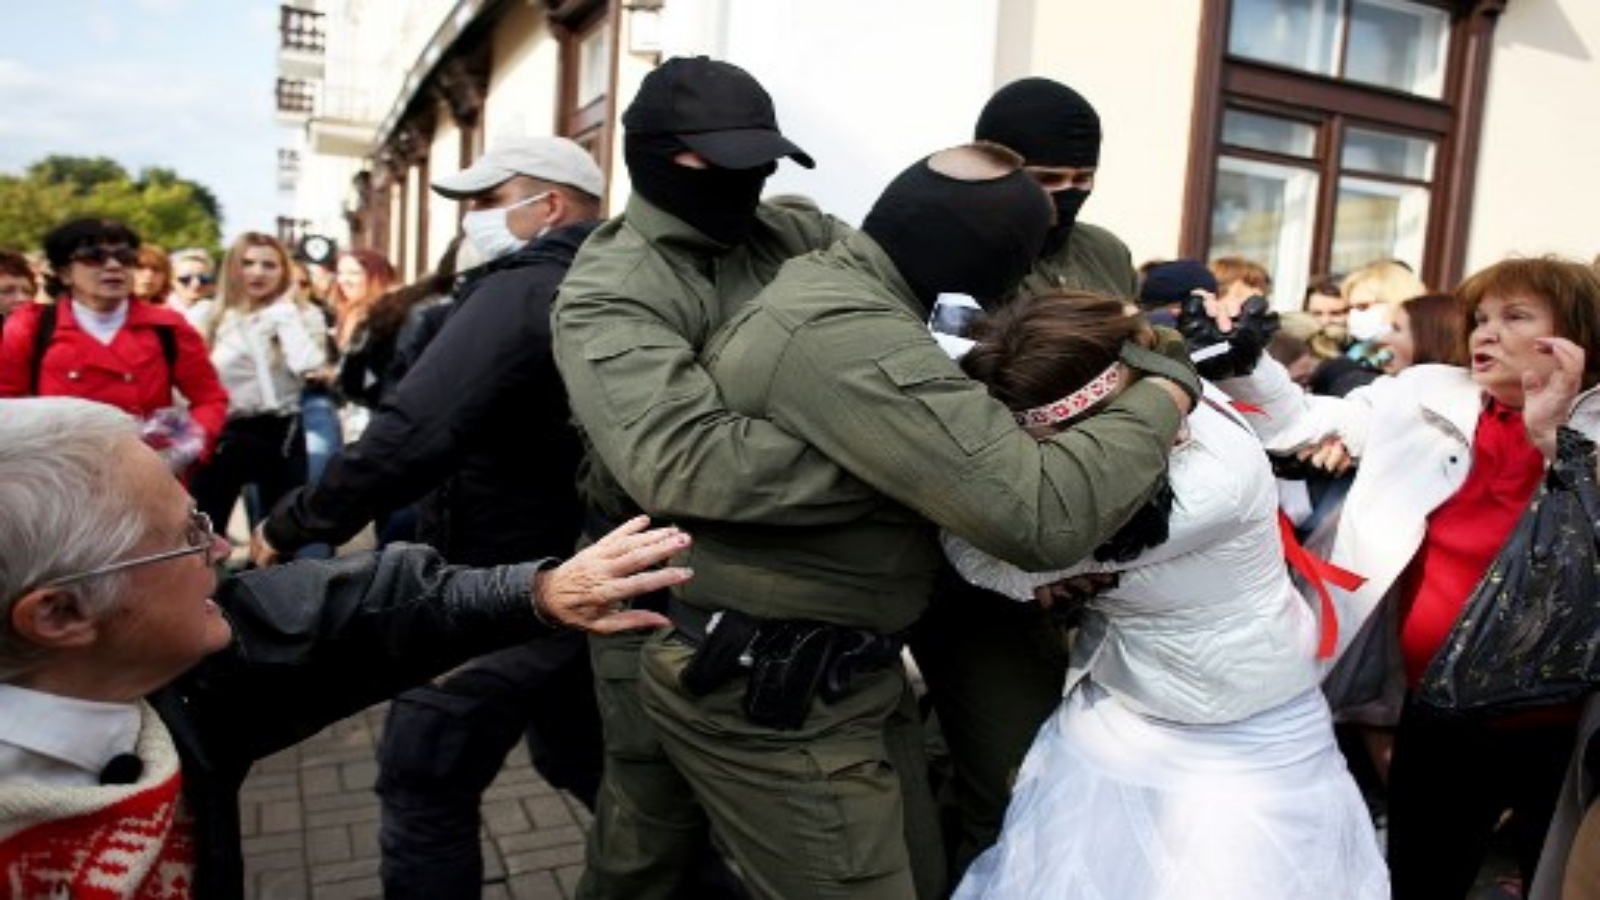 ضباط إنفاذ القانون في بيلاروسيا يحتجزون متظاهرين خلال مسيرة احتجاجية على نتائج الانتخابات الرئاسية في مينسك في 12 سبتمبر 2020